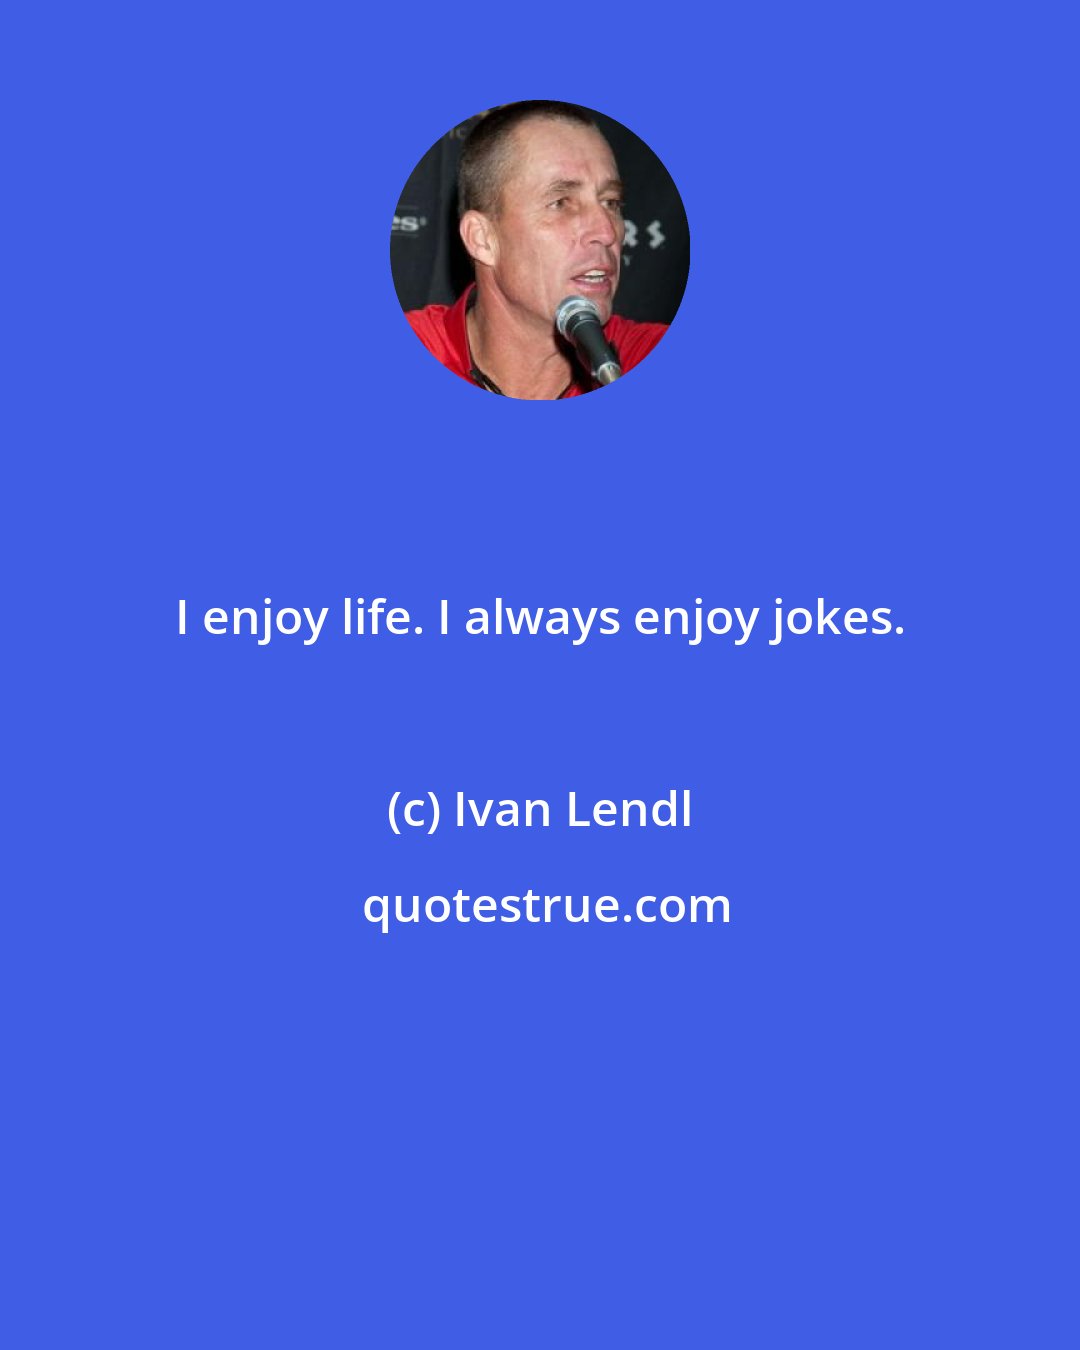 Ivan Lendl: I enjoy life. I always enjoy jokes.